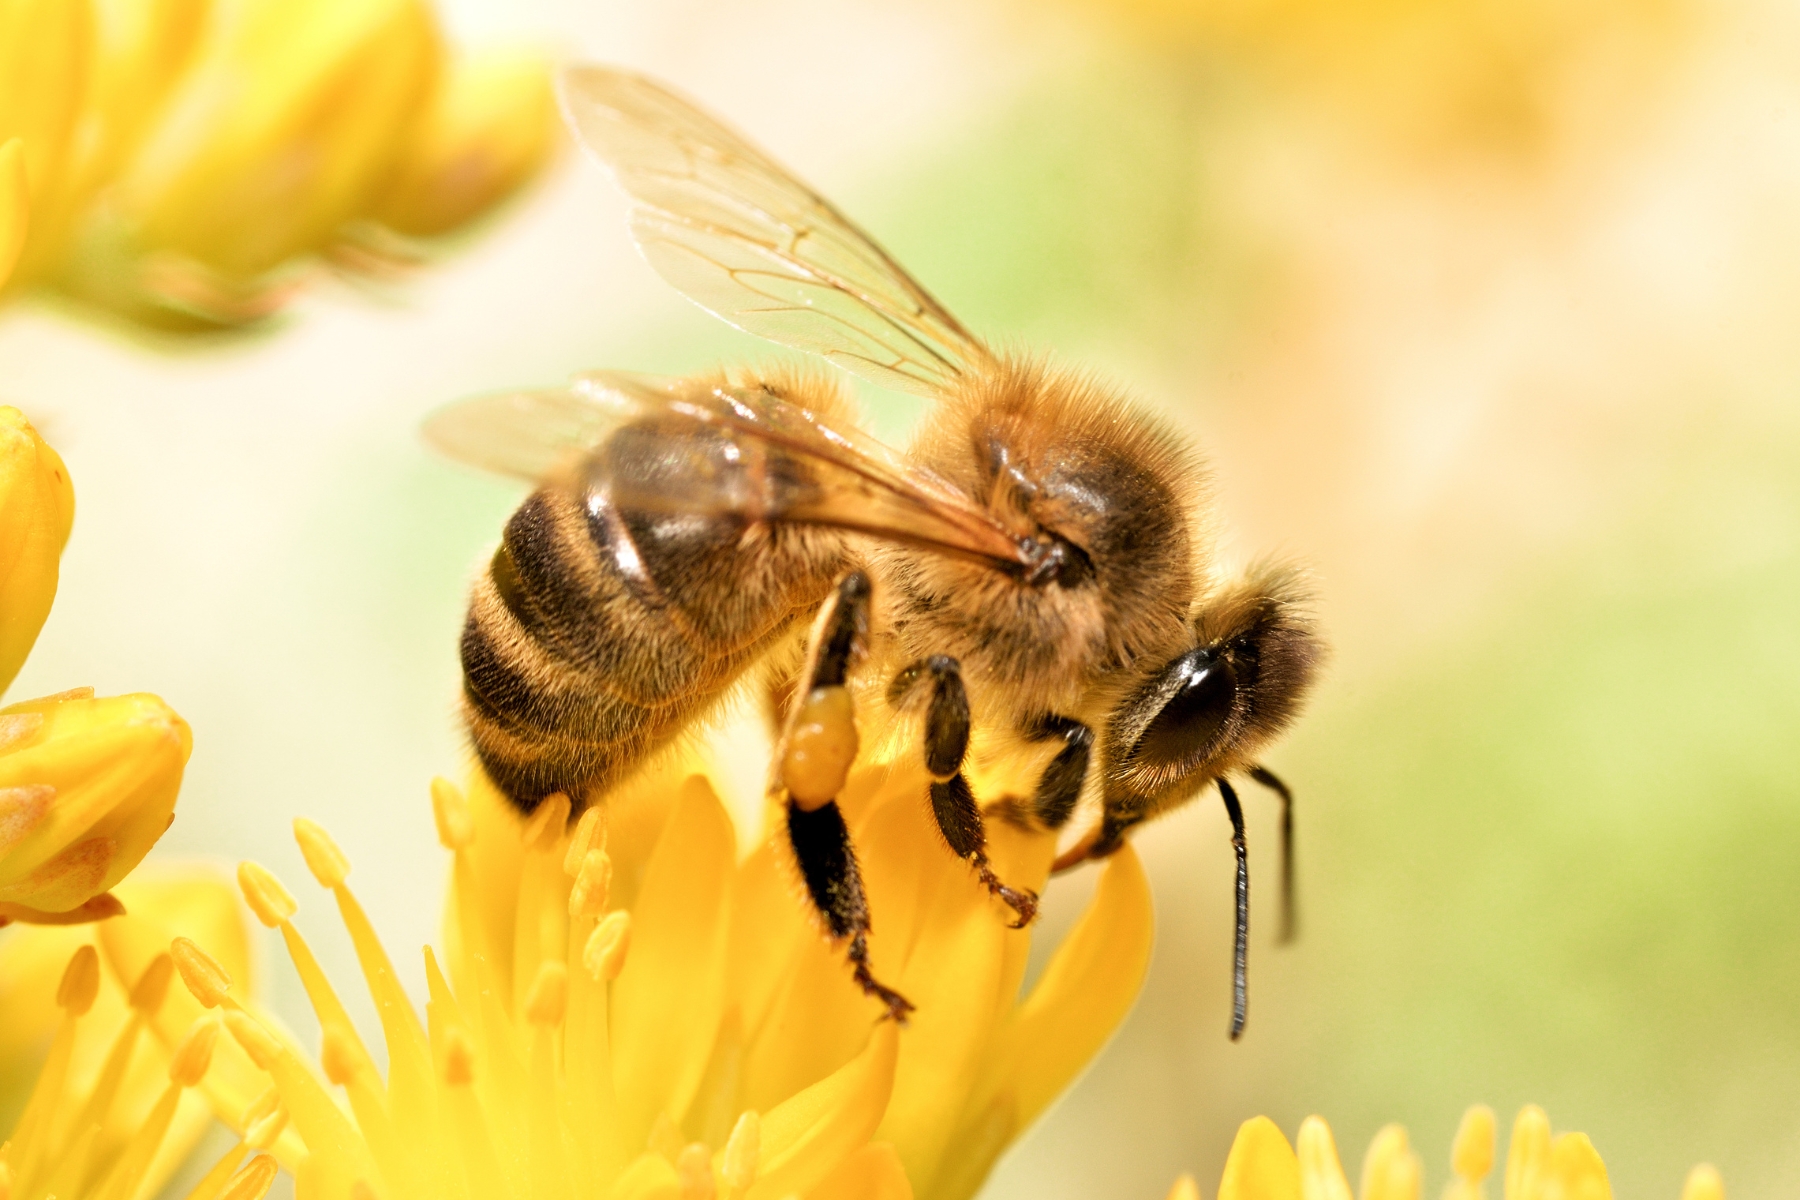 Descubra a importância das abelhas para ecossistemas, agricultura e nossa sobrevivência. Junte-se à causa de sua proteção e conservação.